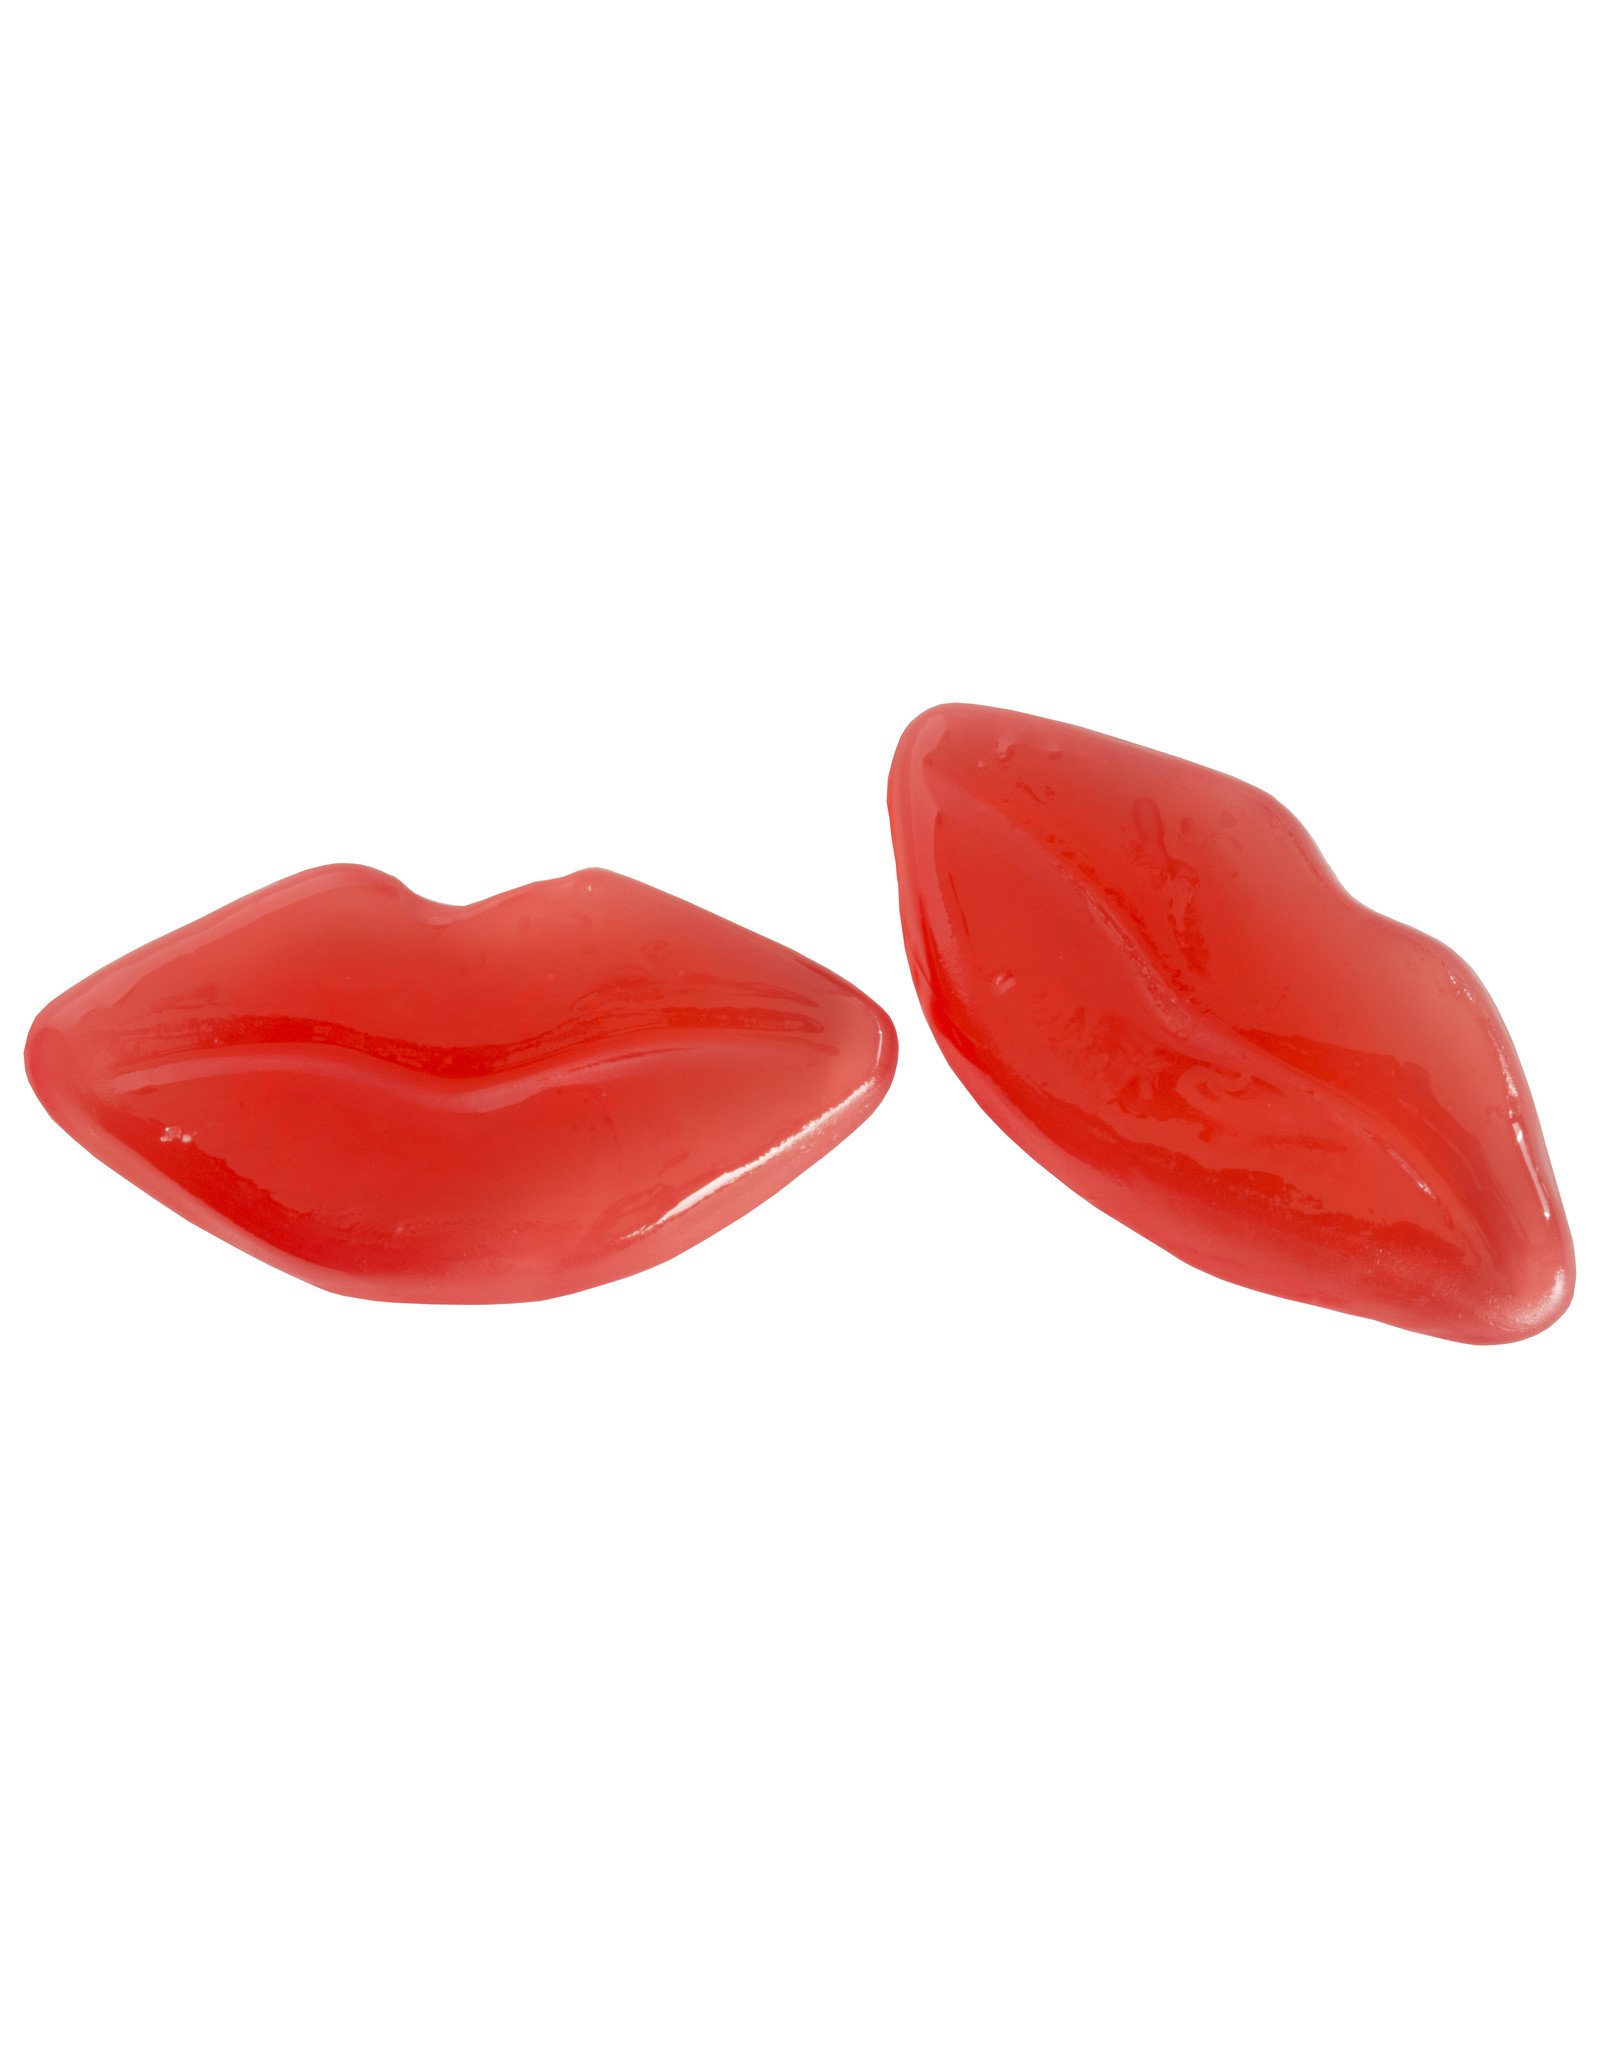 MILA geoliede gom - snoep in de vorm van hot lips